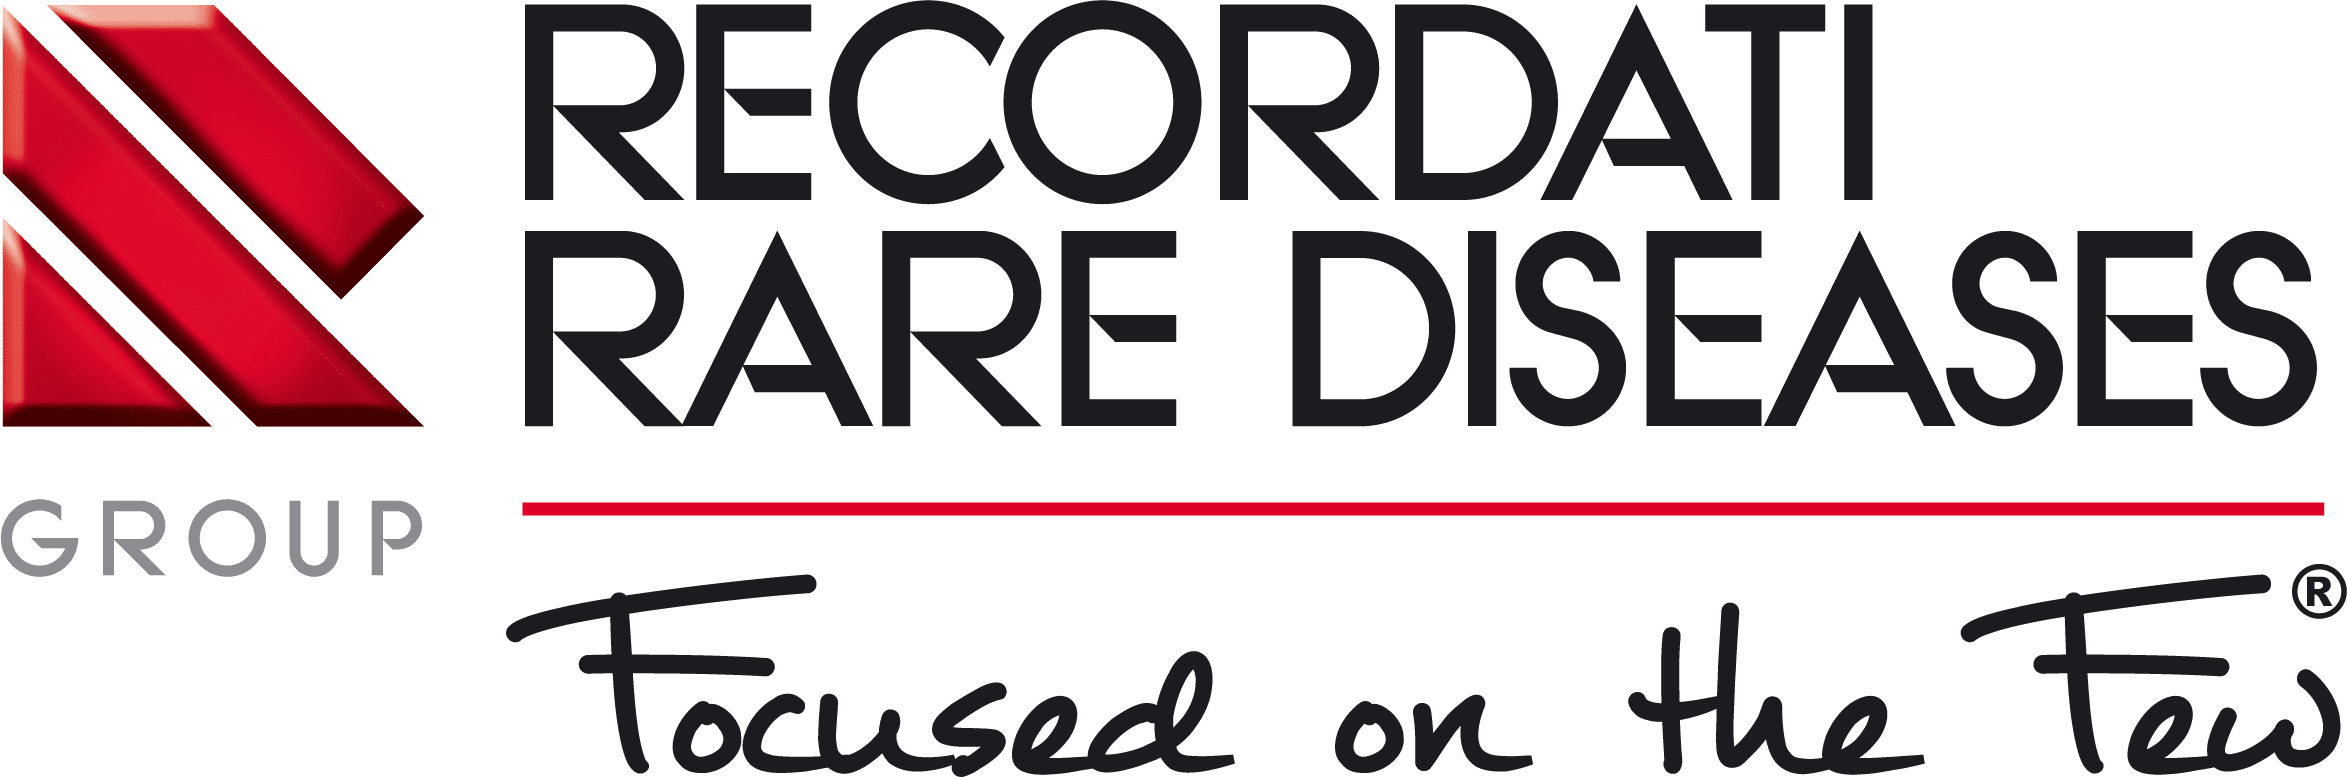 Recordati Rare Diseases